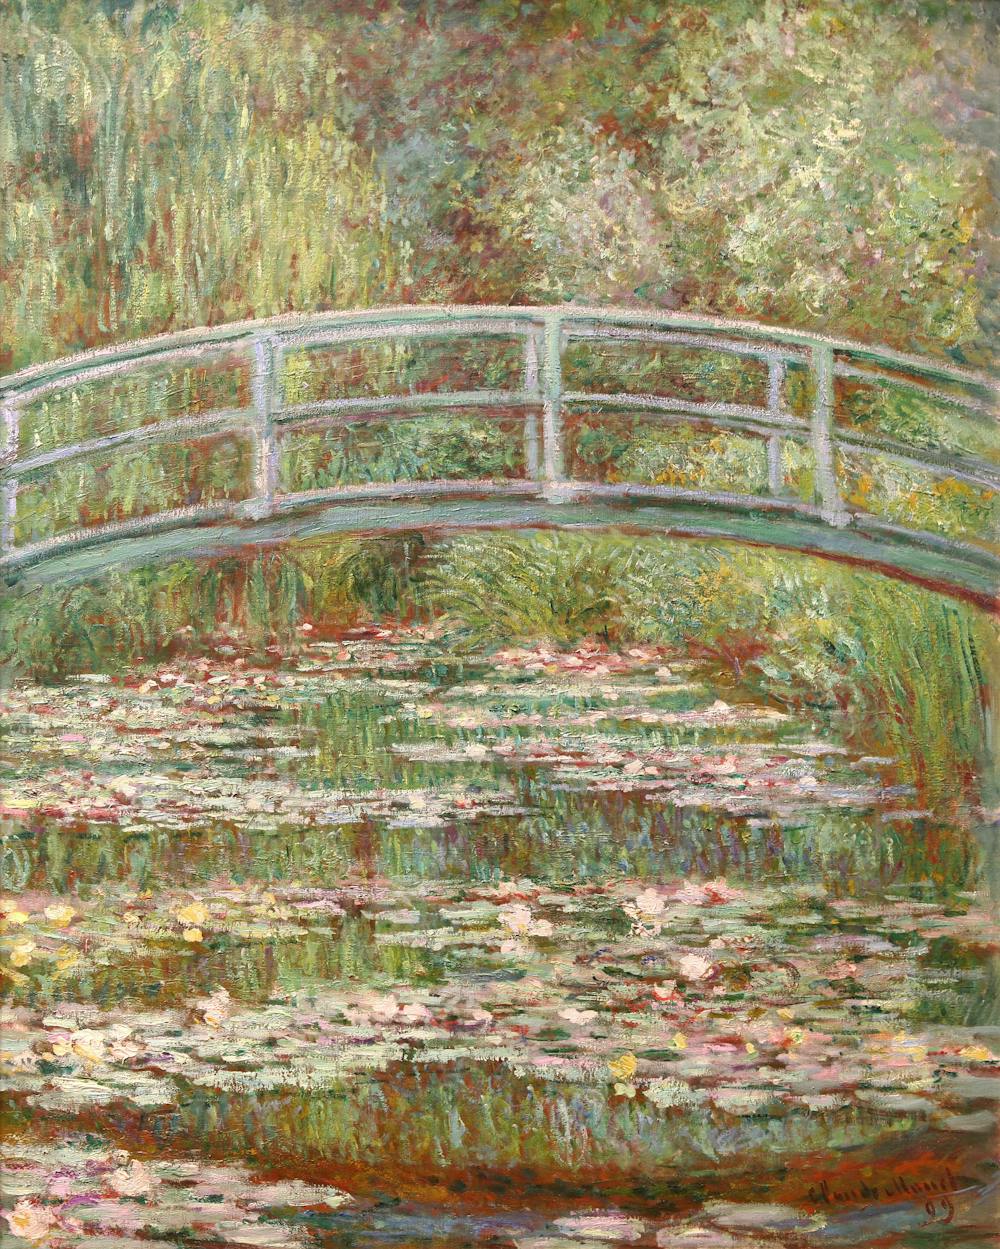 Claude monet vision. Claude Monet - The Water Lily obsession vásárlása